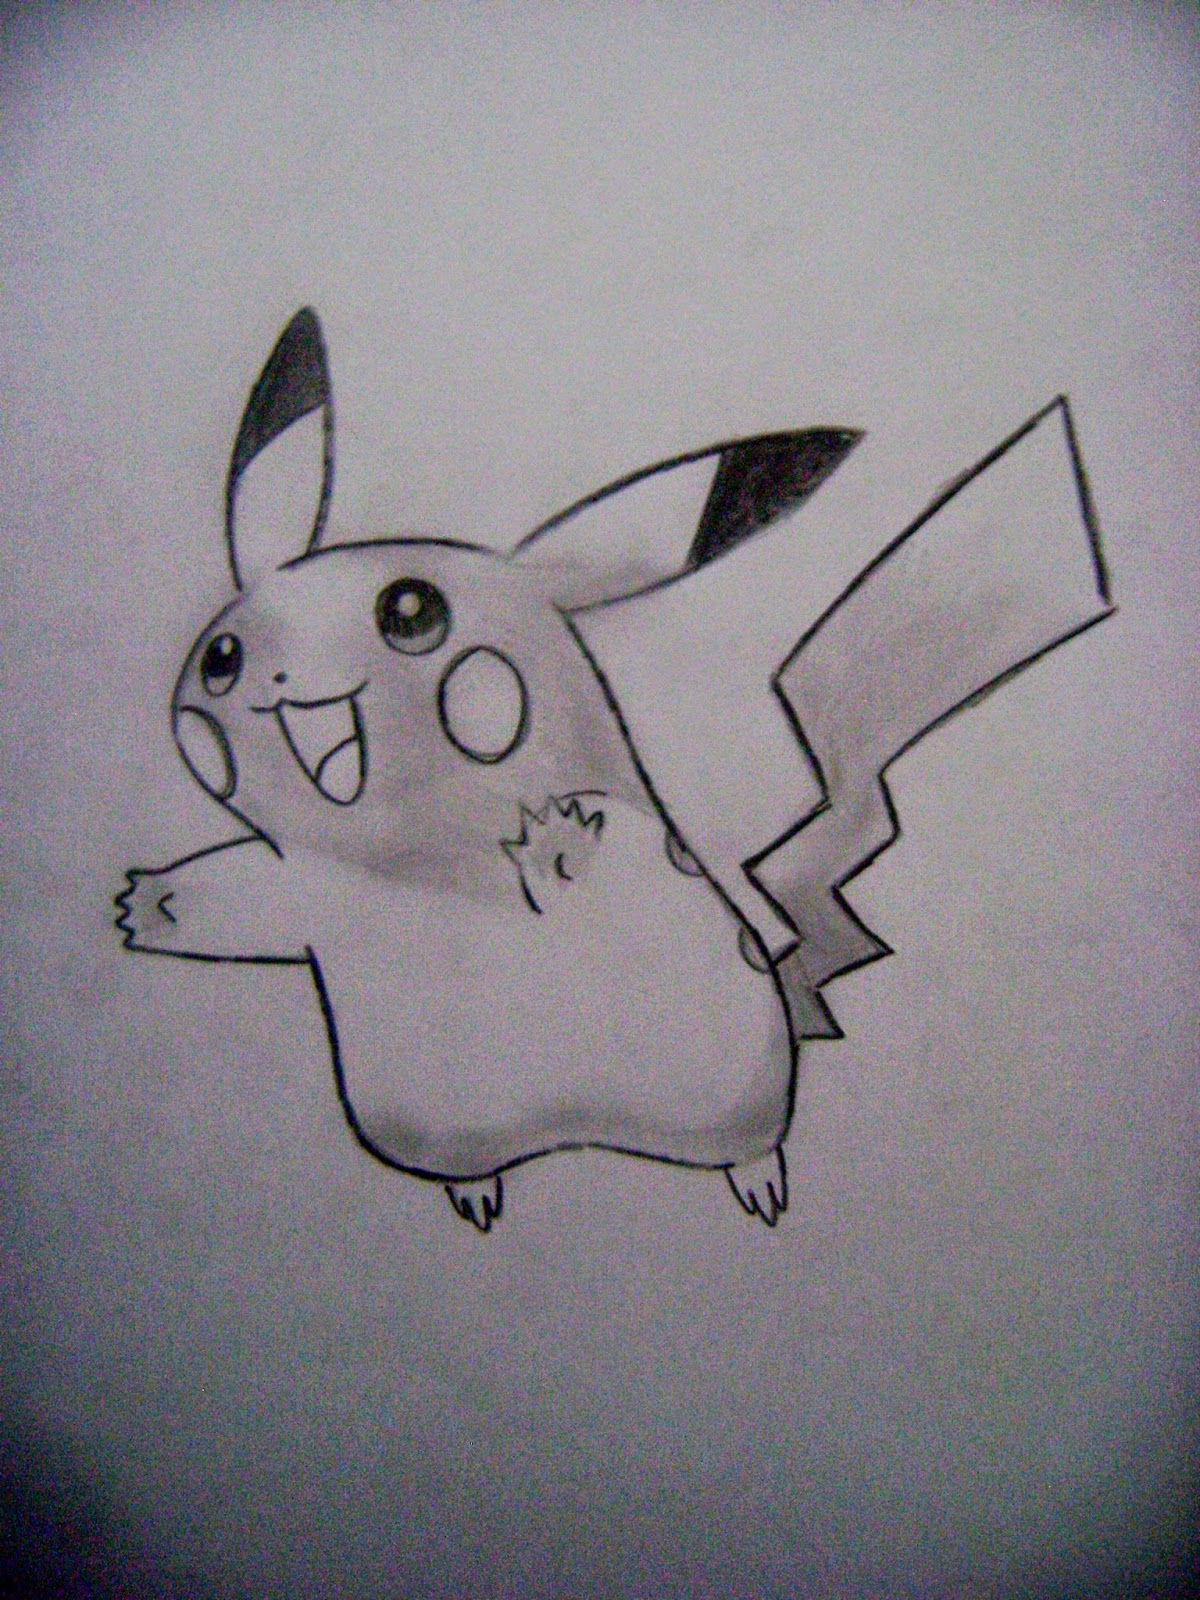 Desenhos de Pikachu - Como desenhar Pikachu passo a passo